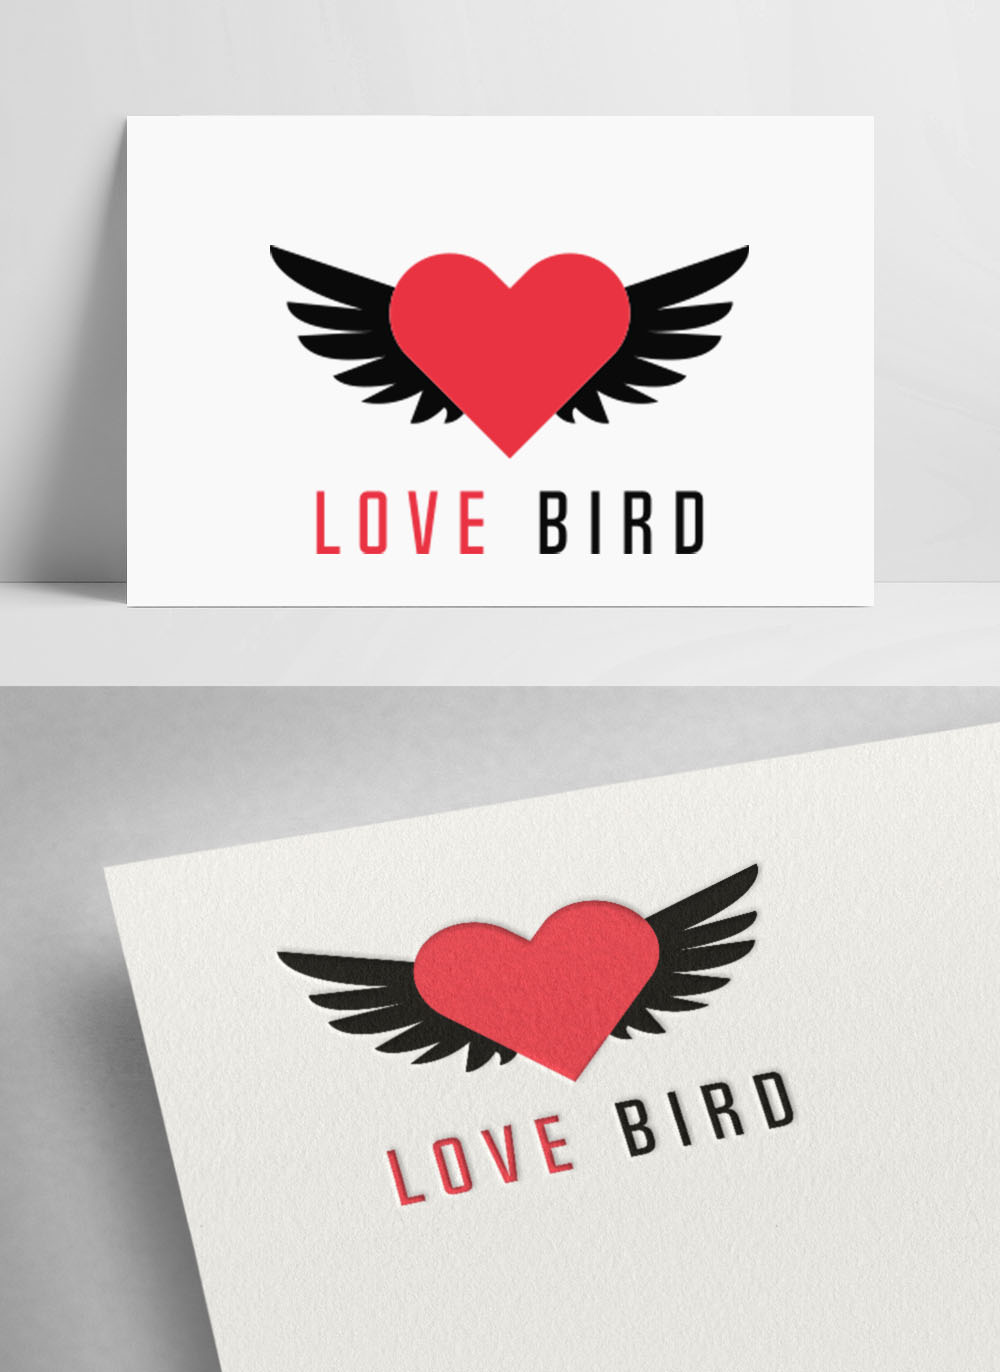 Love bird logo Royalty Free Vector Image - VectorStock